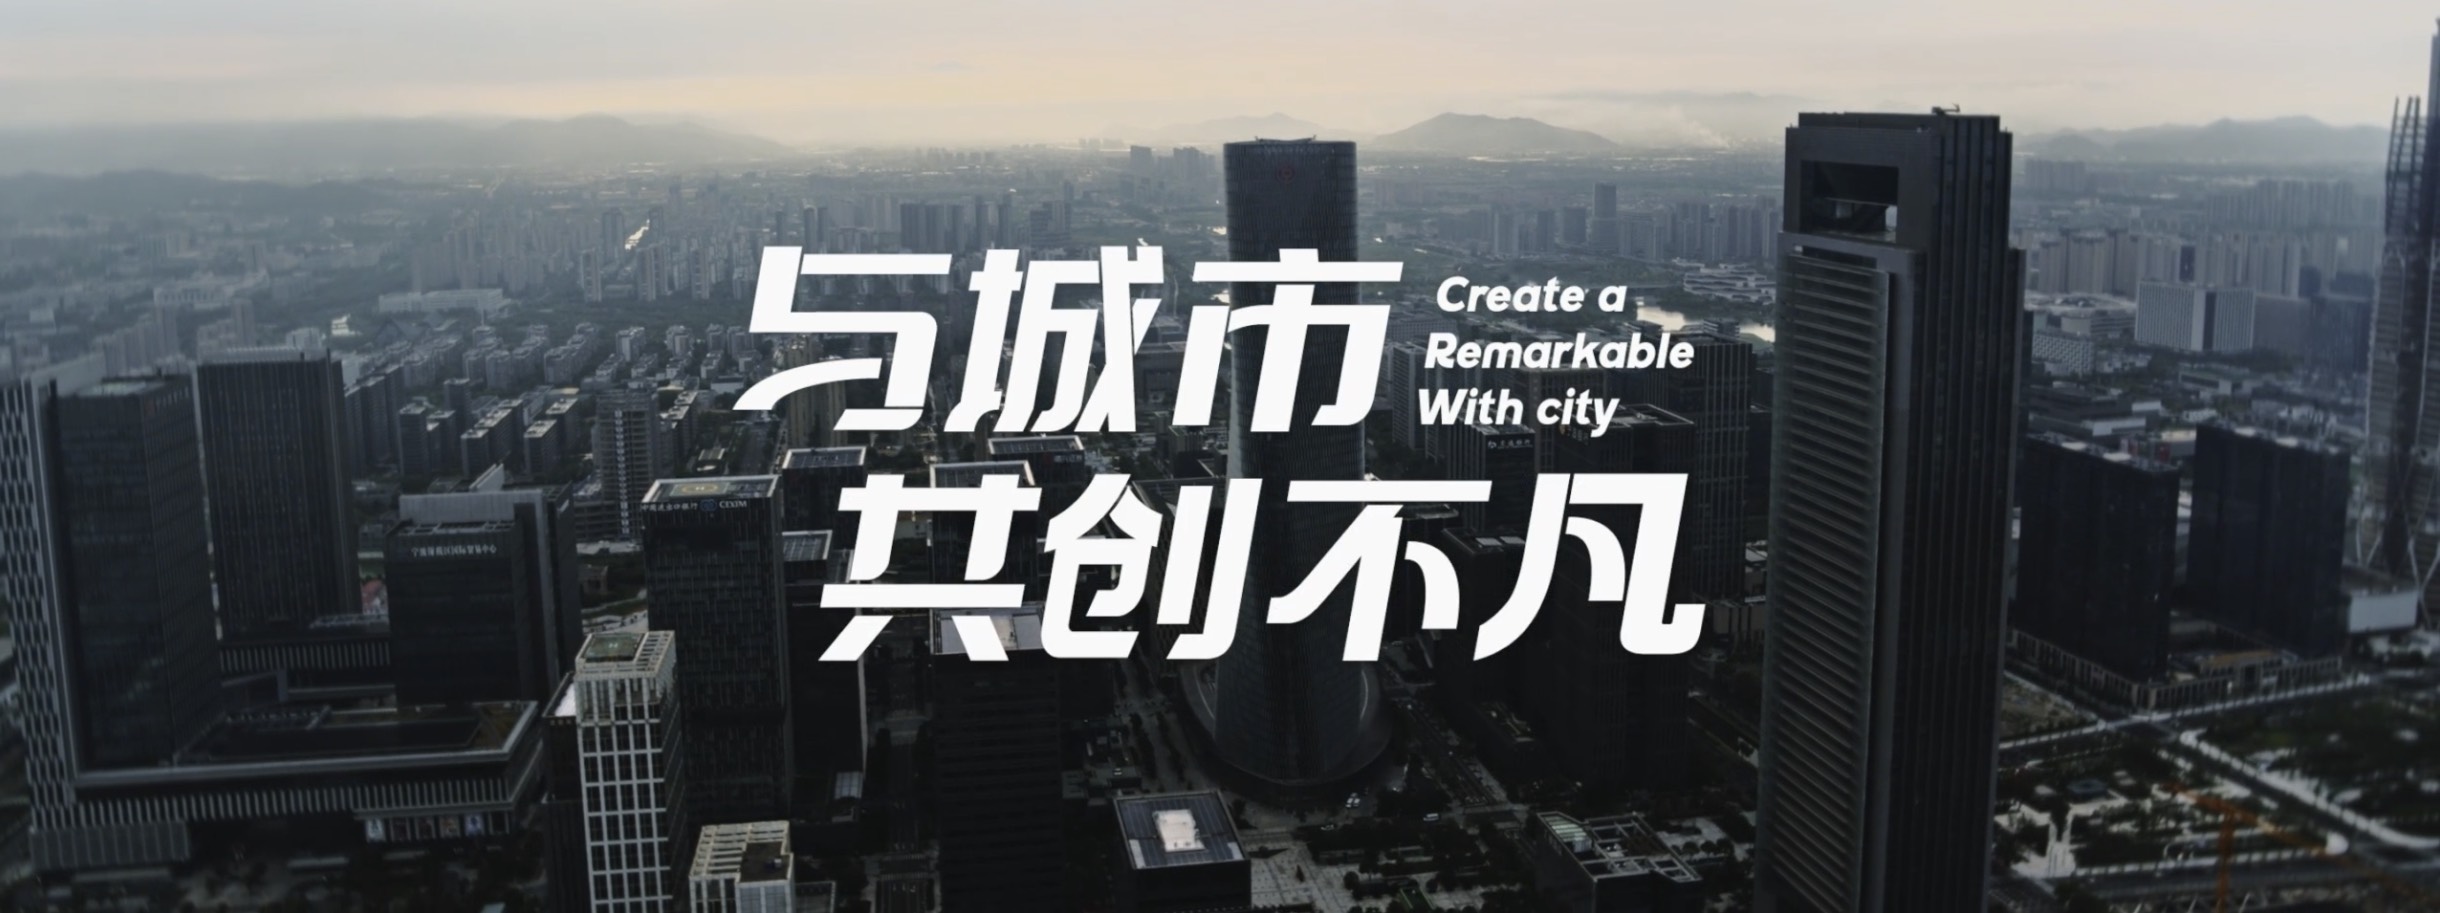 宁波东投集团宣传片《与城市共创不凡》